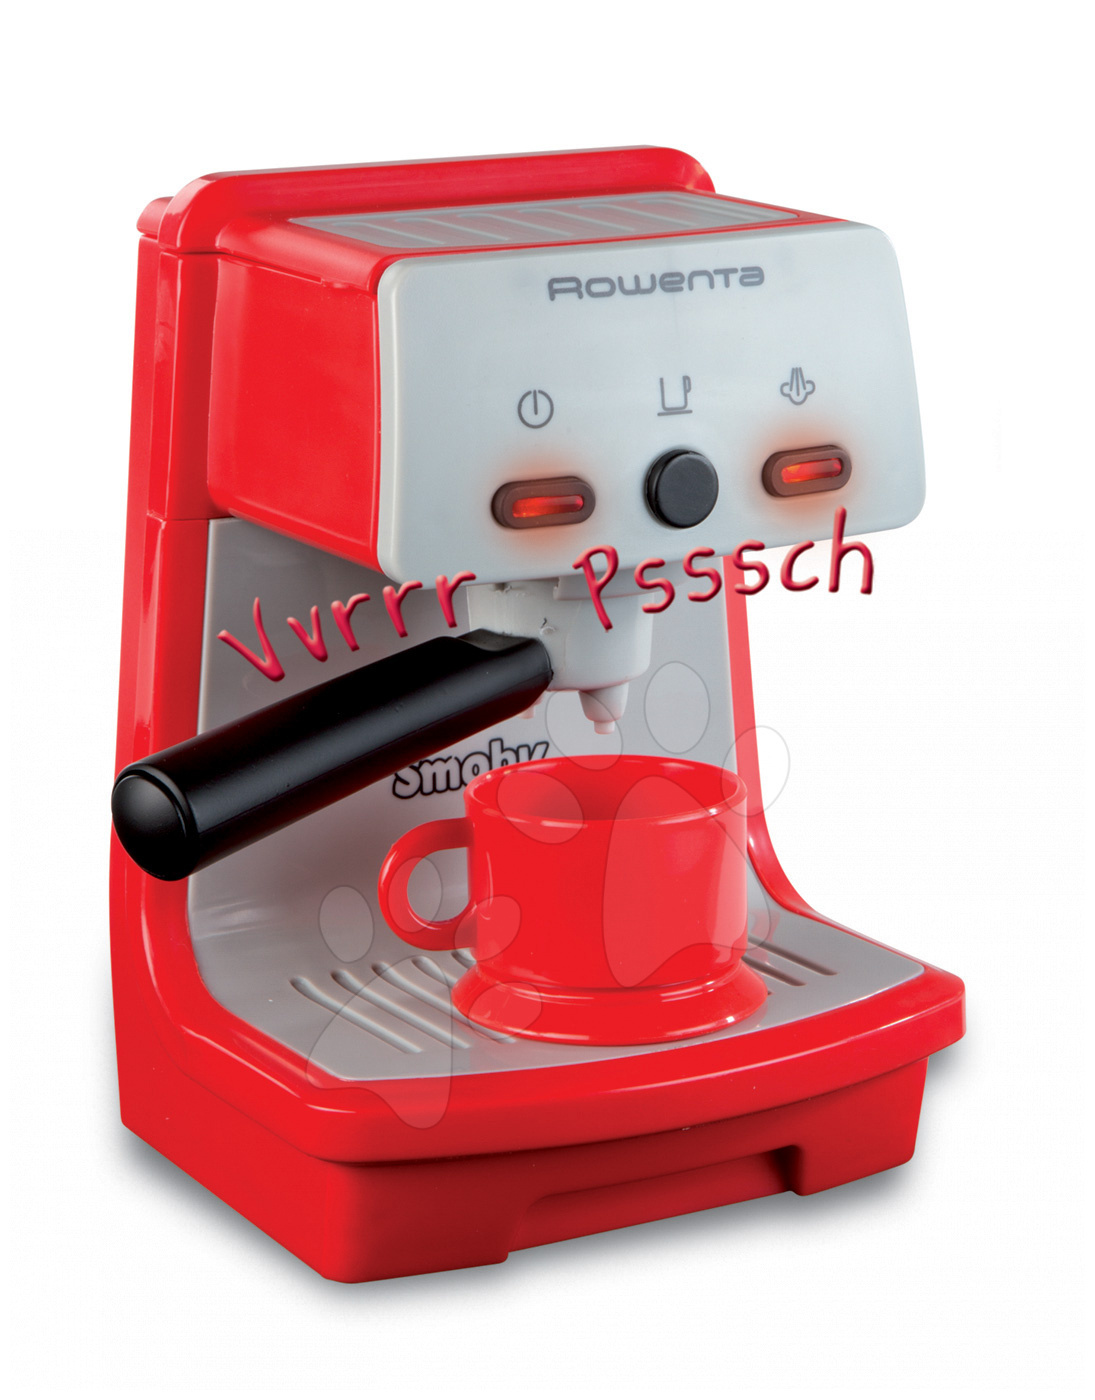 Smoby dětský kávovar Rowenta Espresso 24802 červený